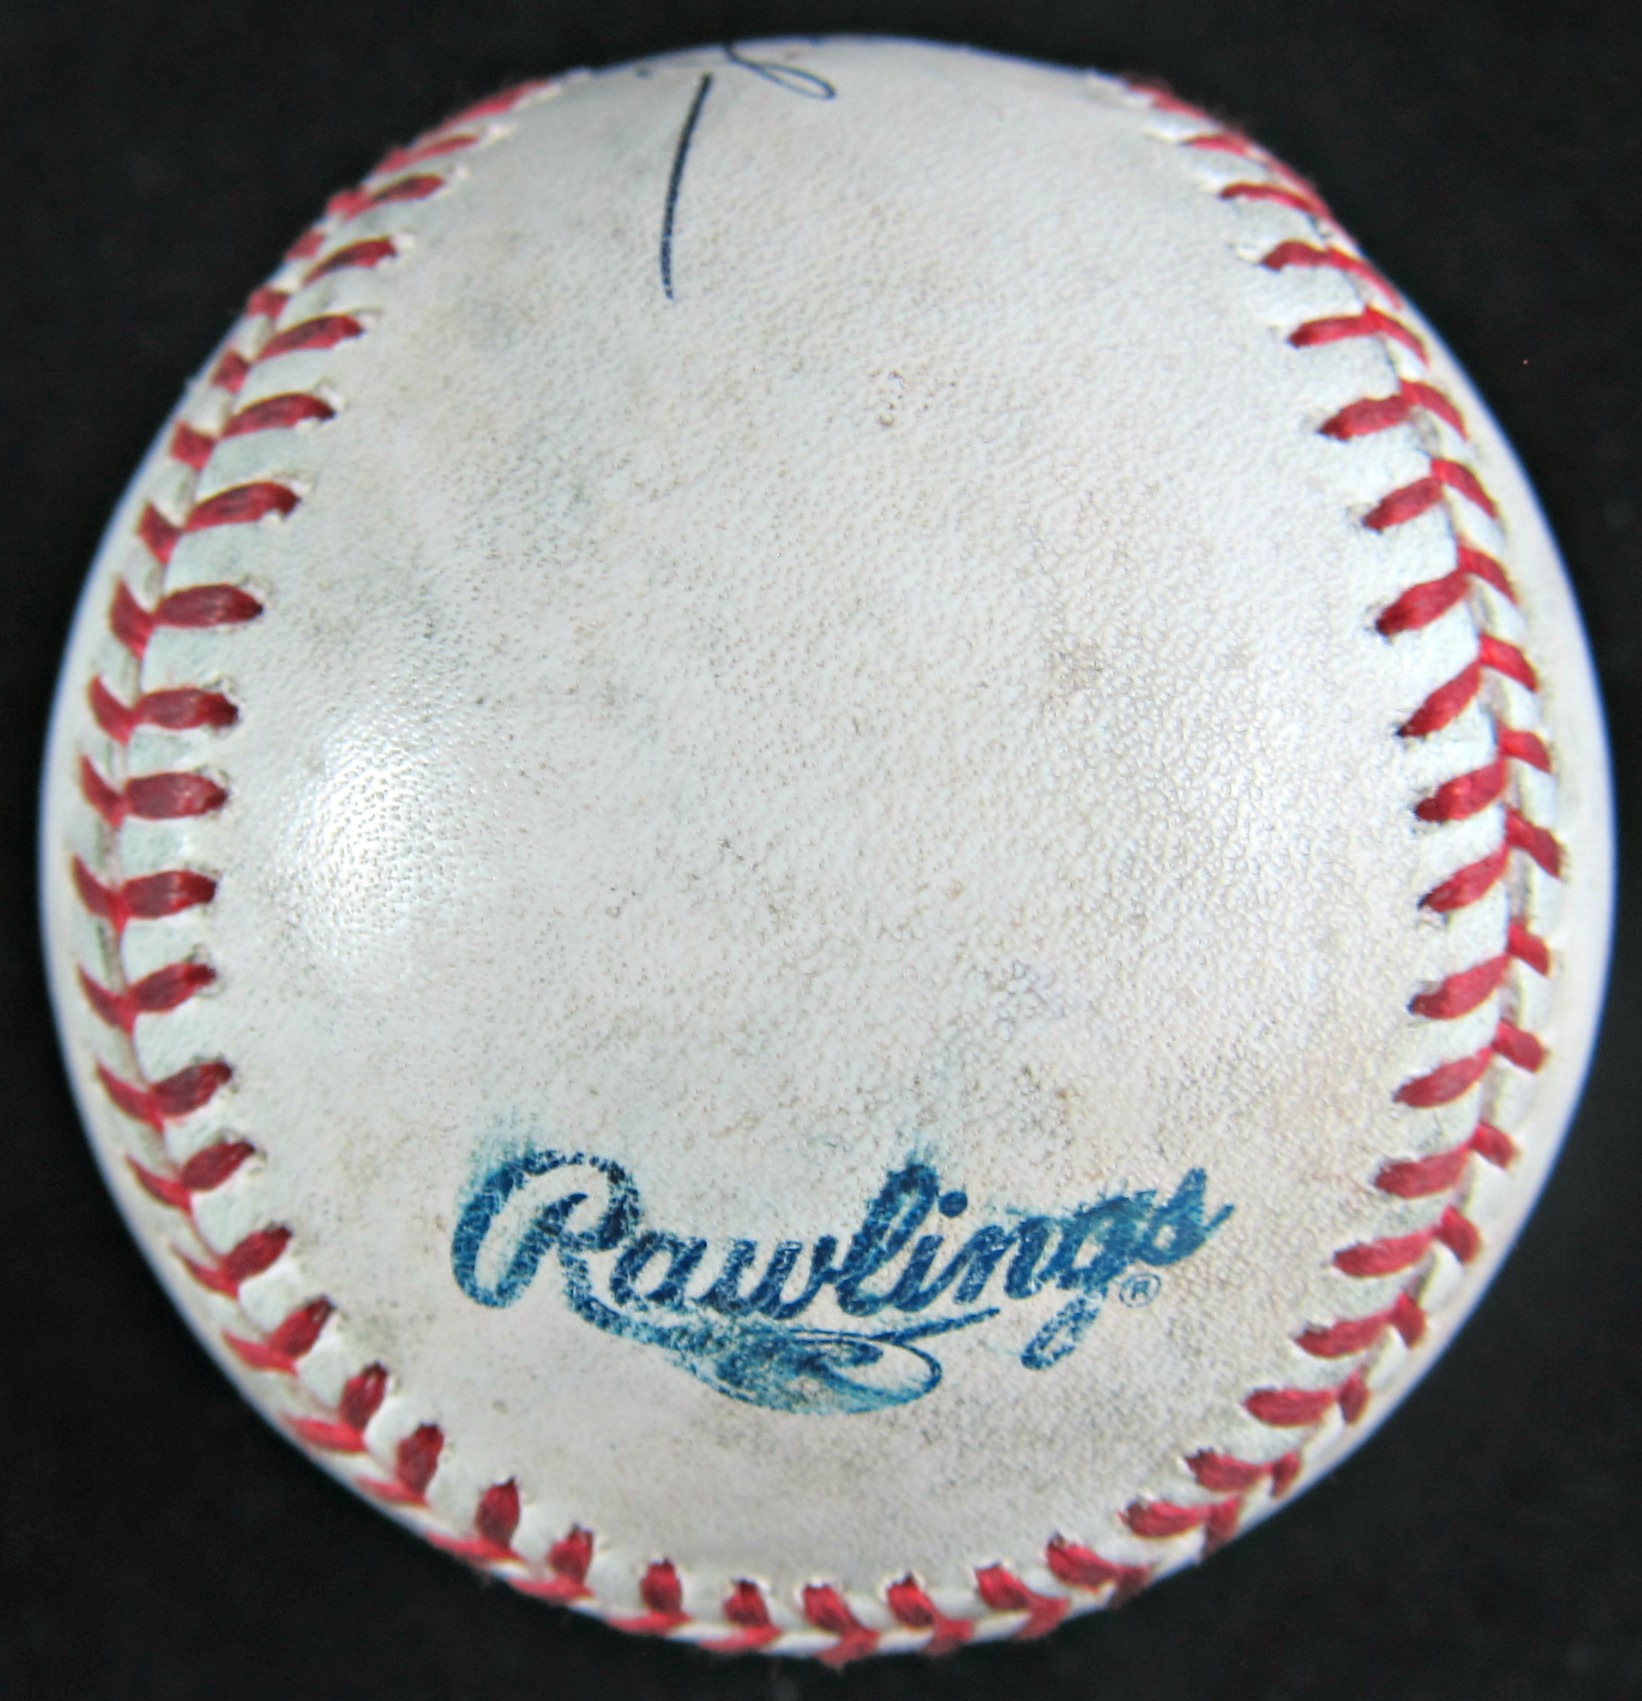 Giancarlo Stanton Autographed Baseball